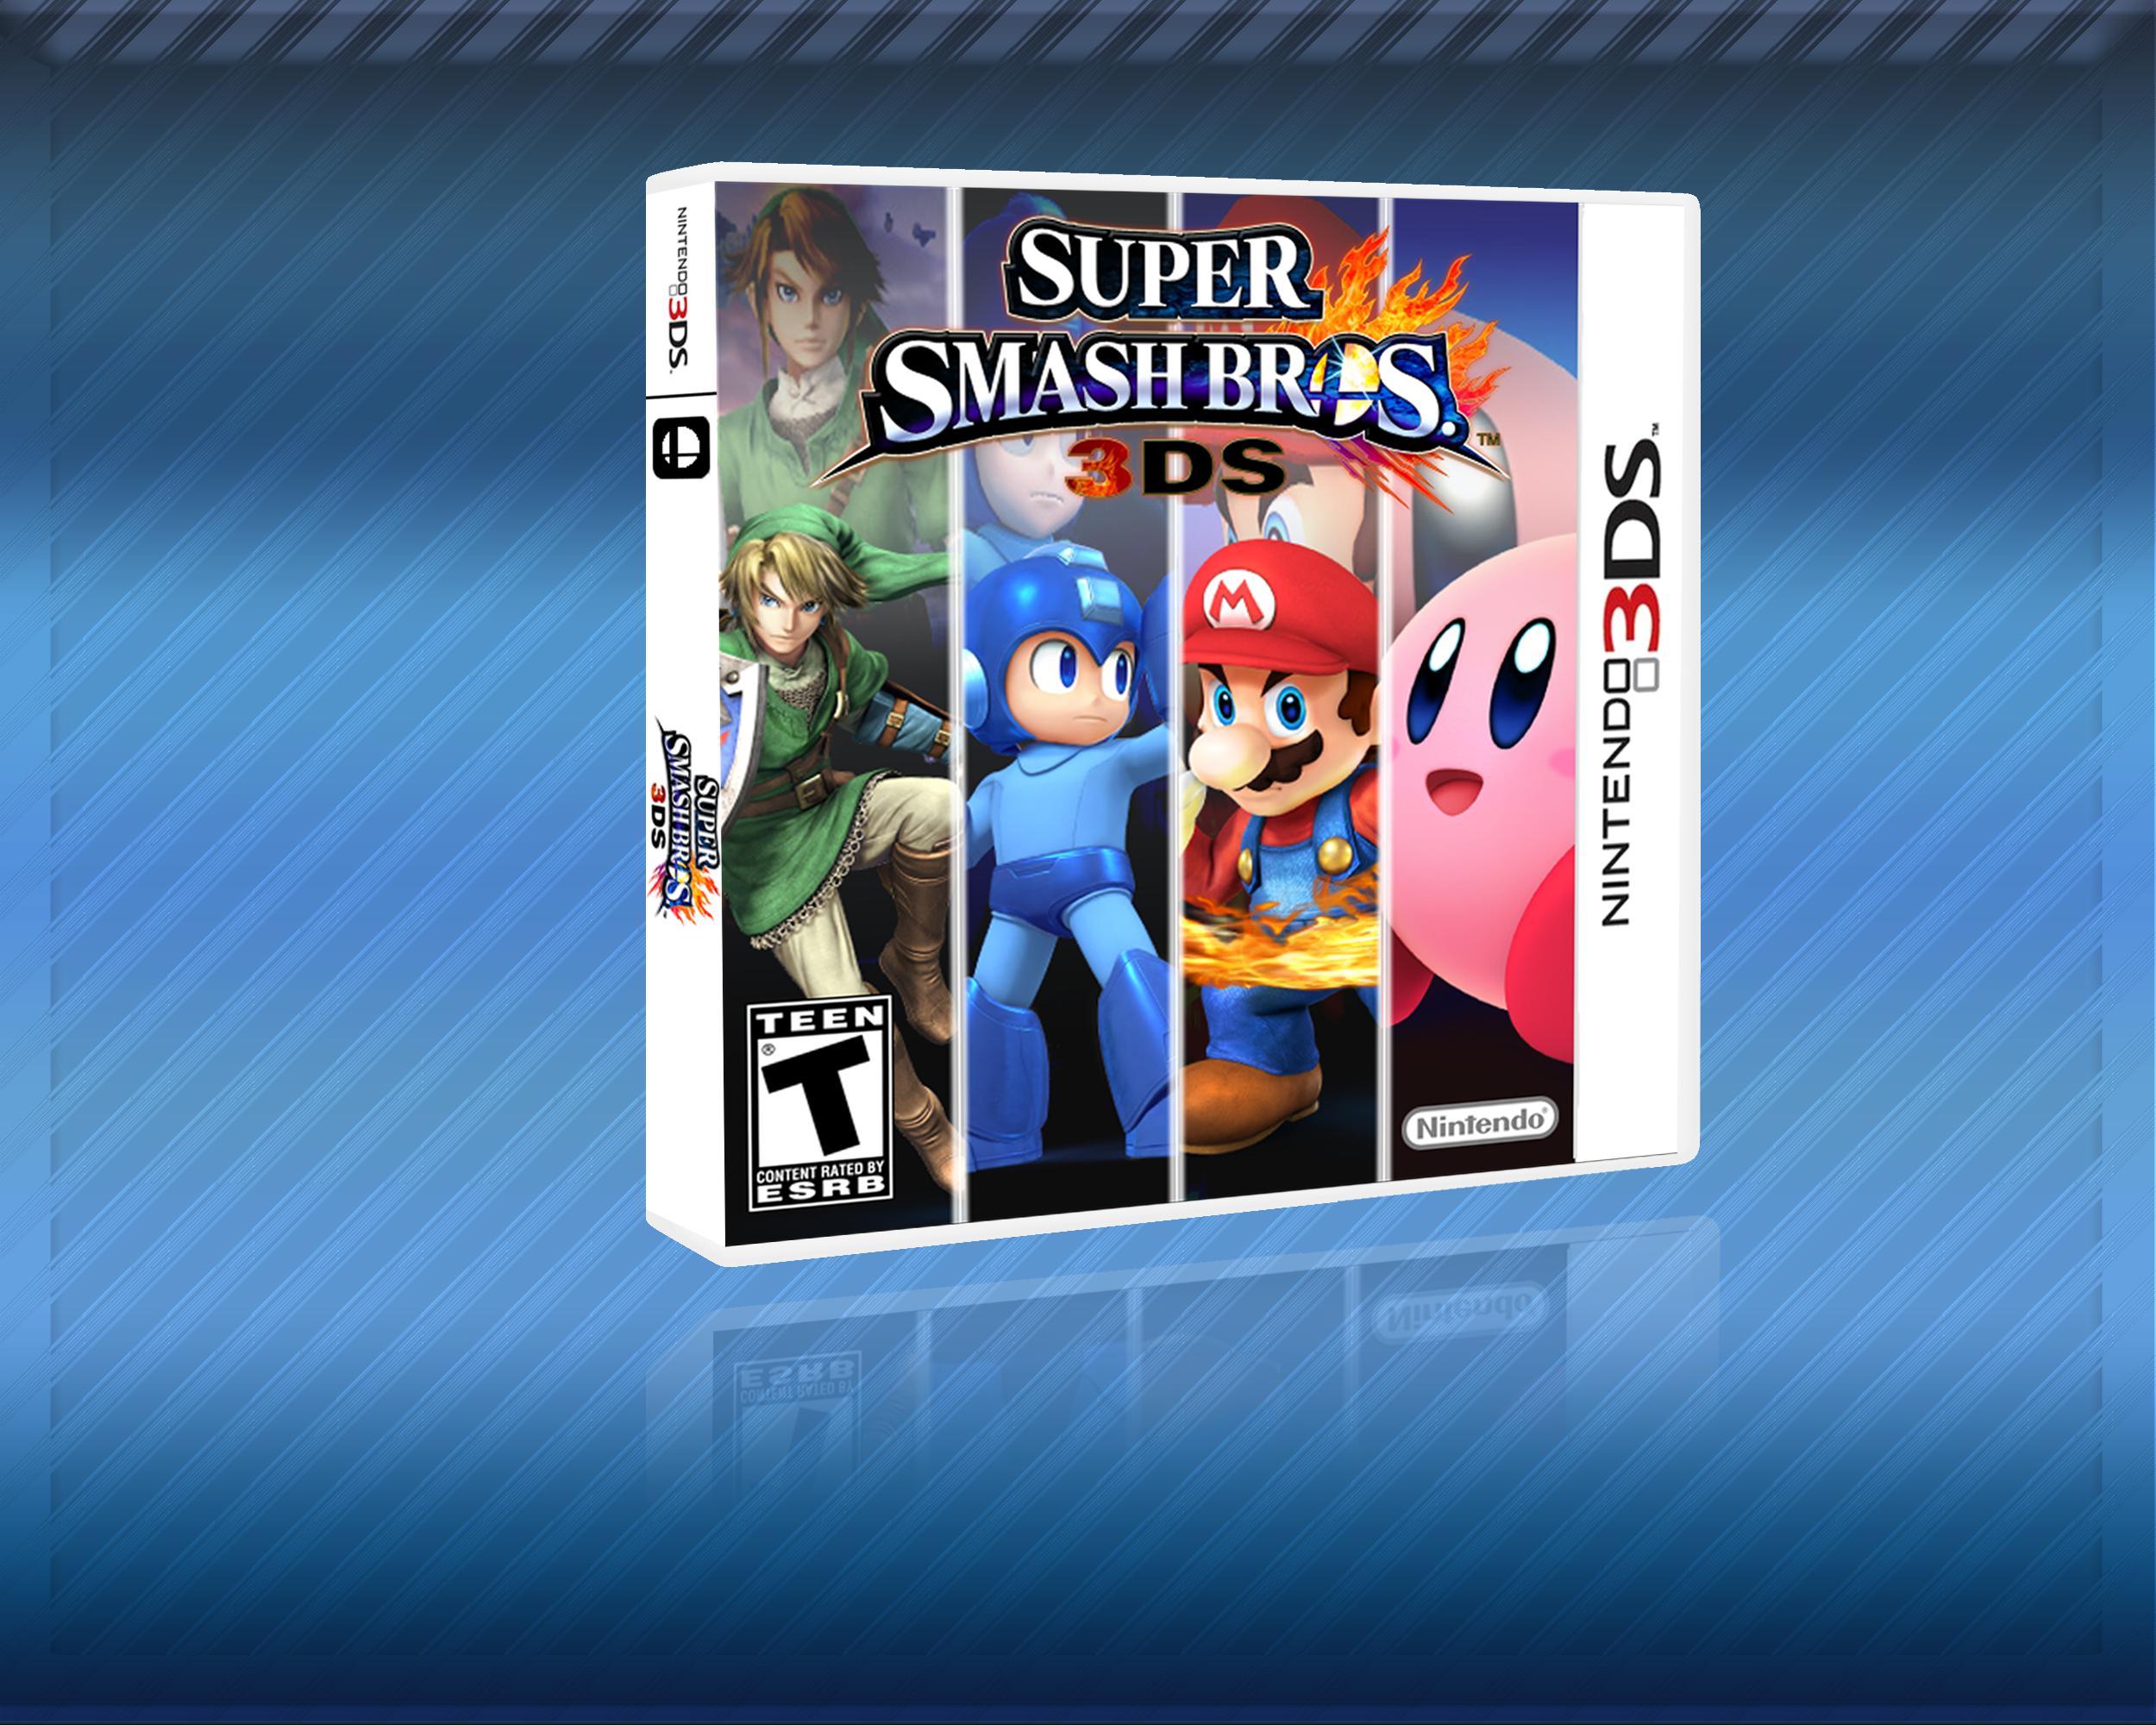 Super Smash Bros for Nintendo 3DS box cover